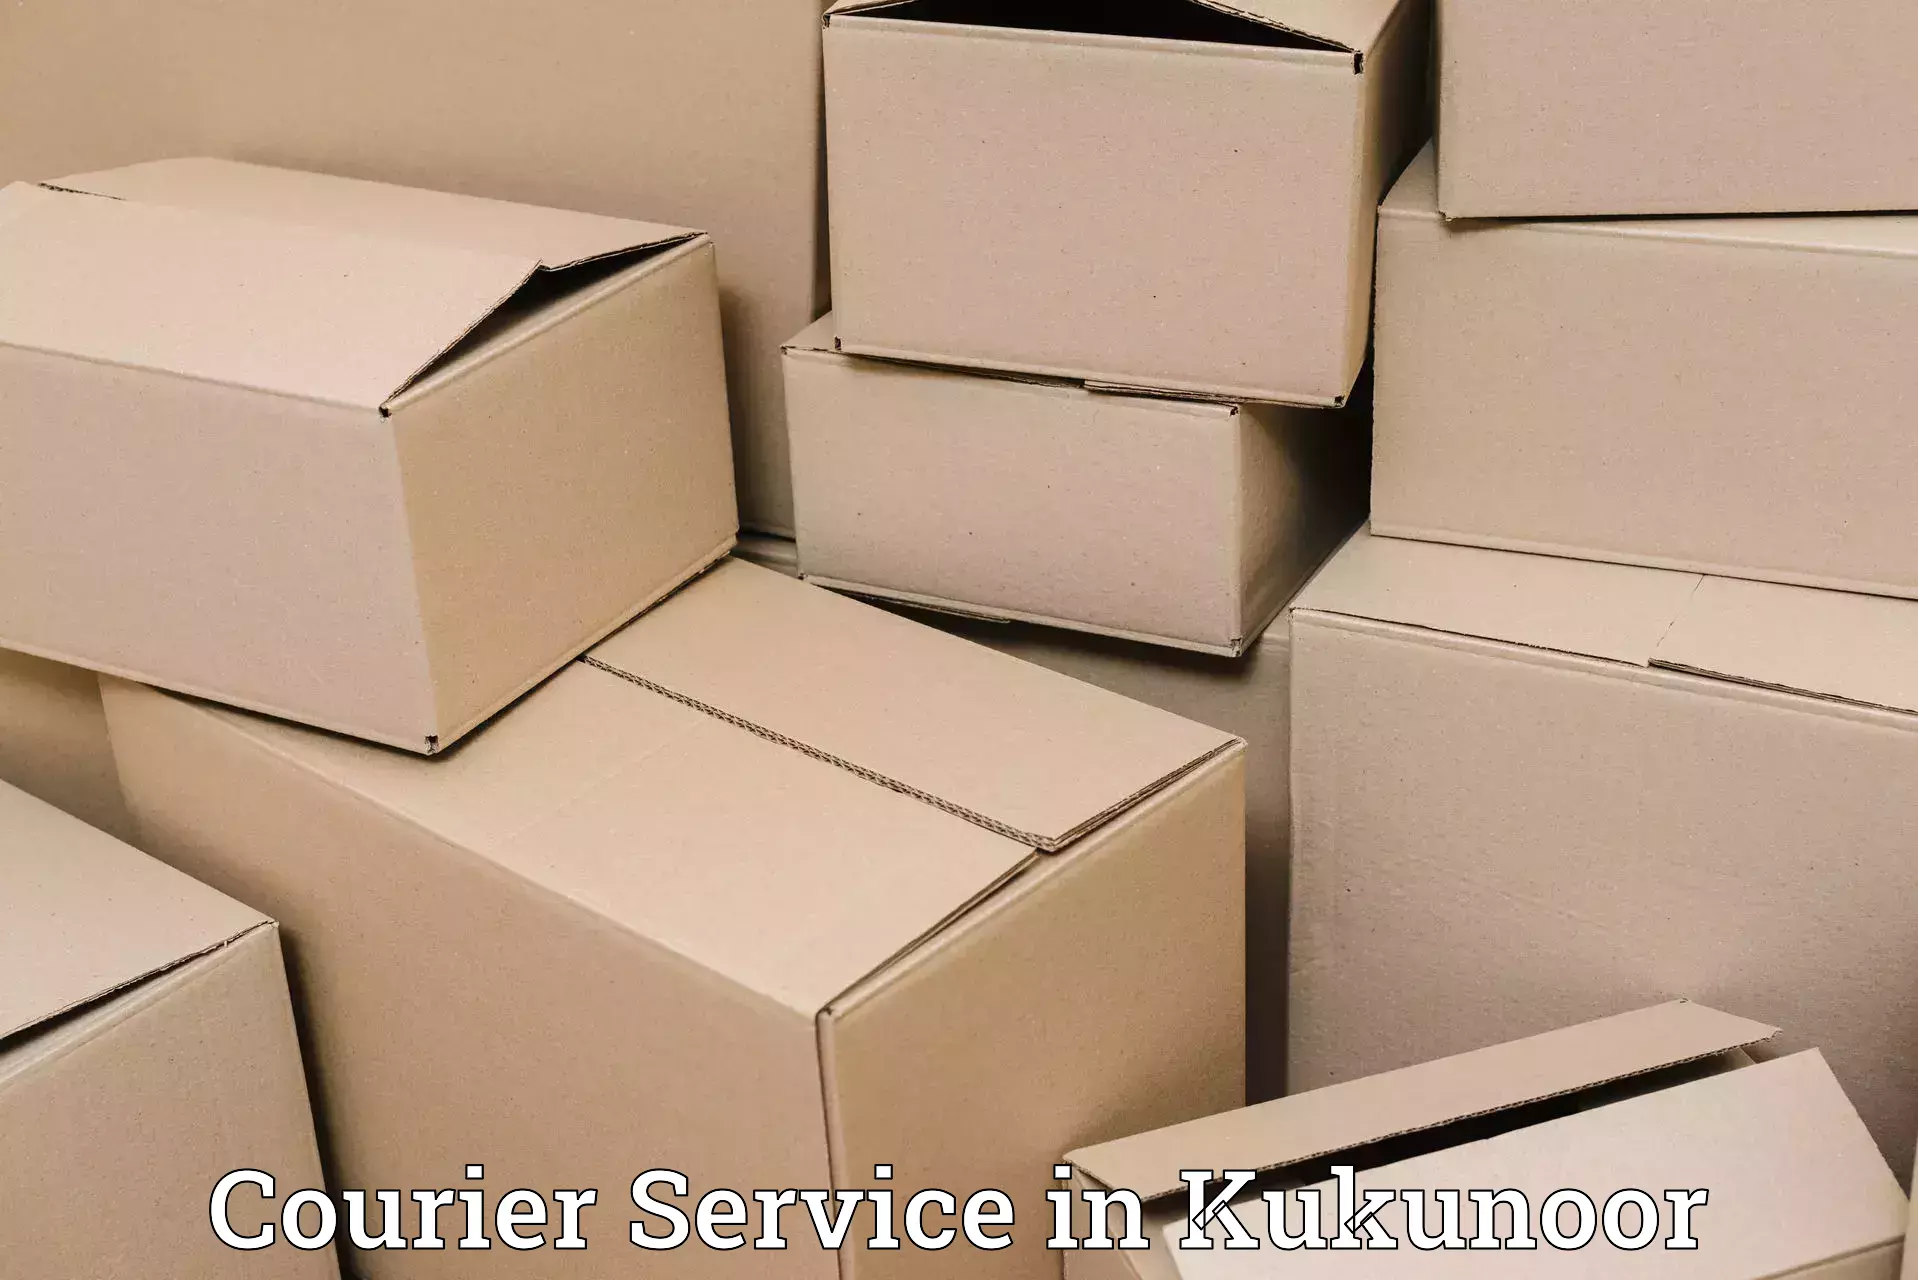 Smart parcel solutions in Kukunoor